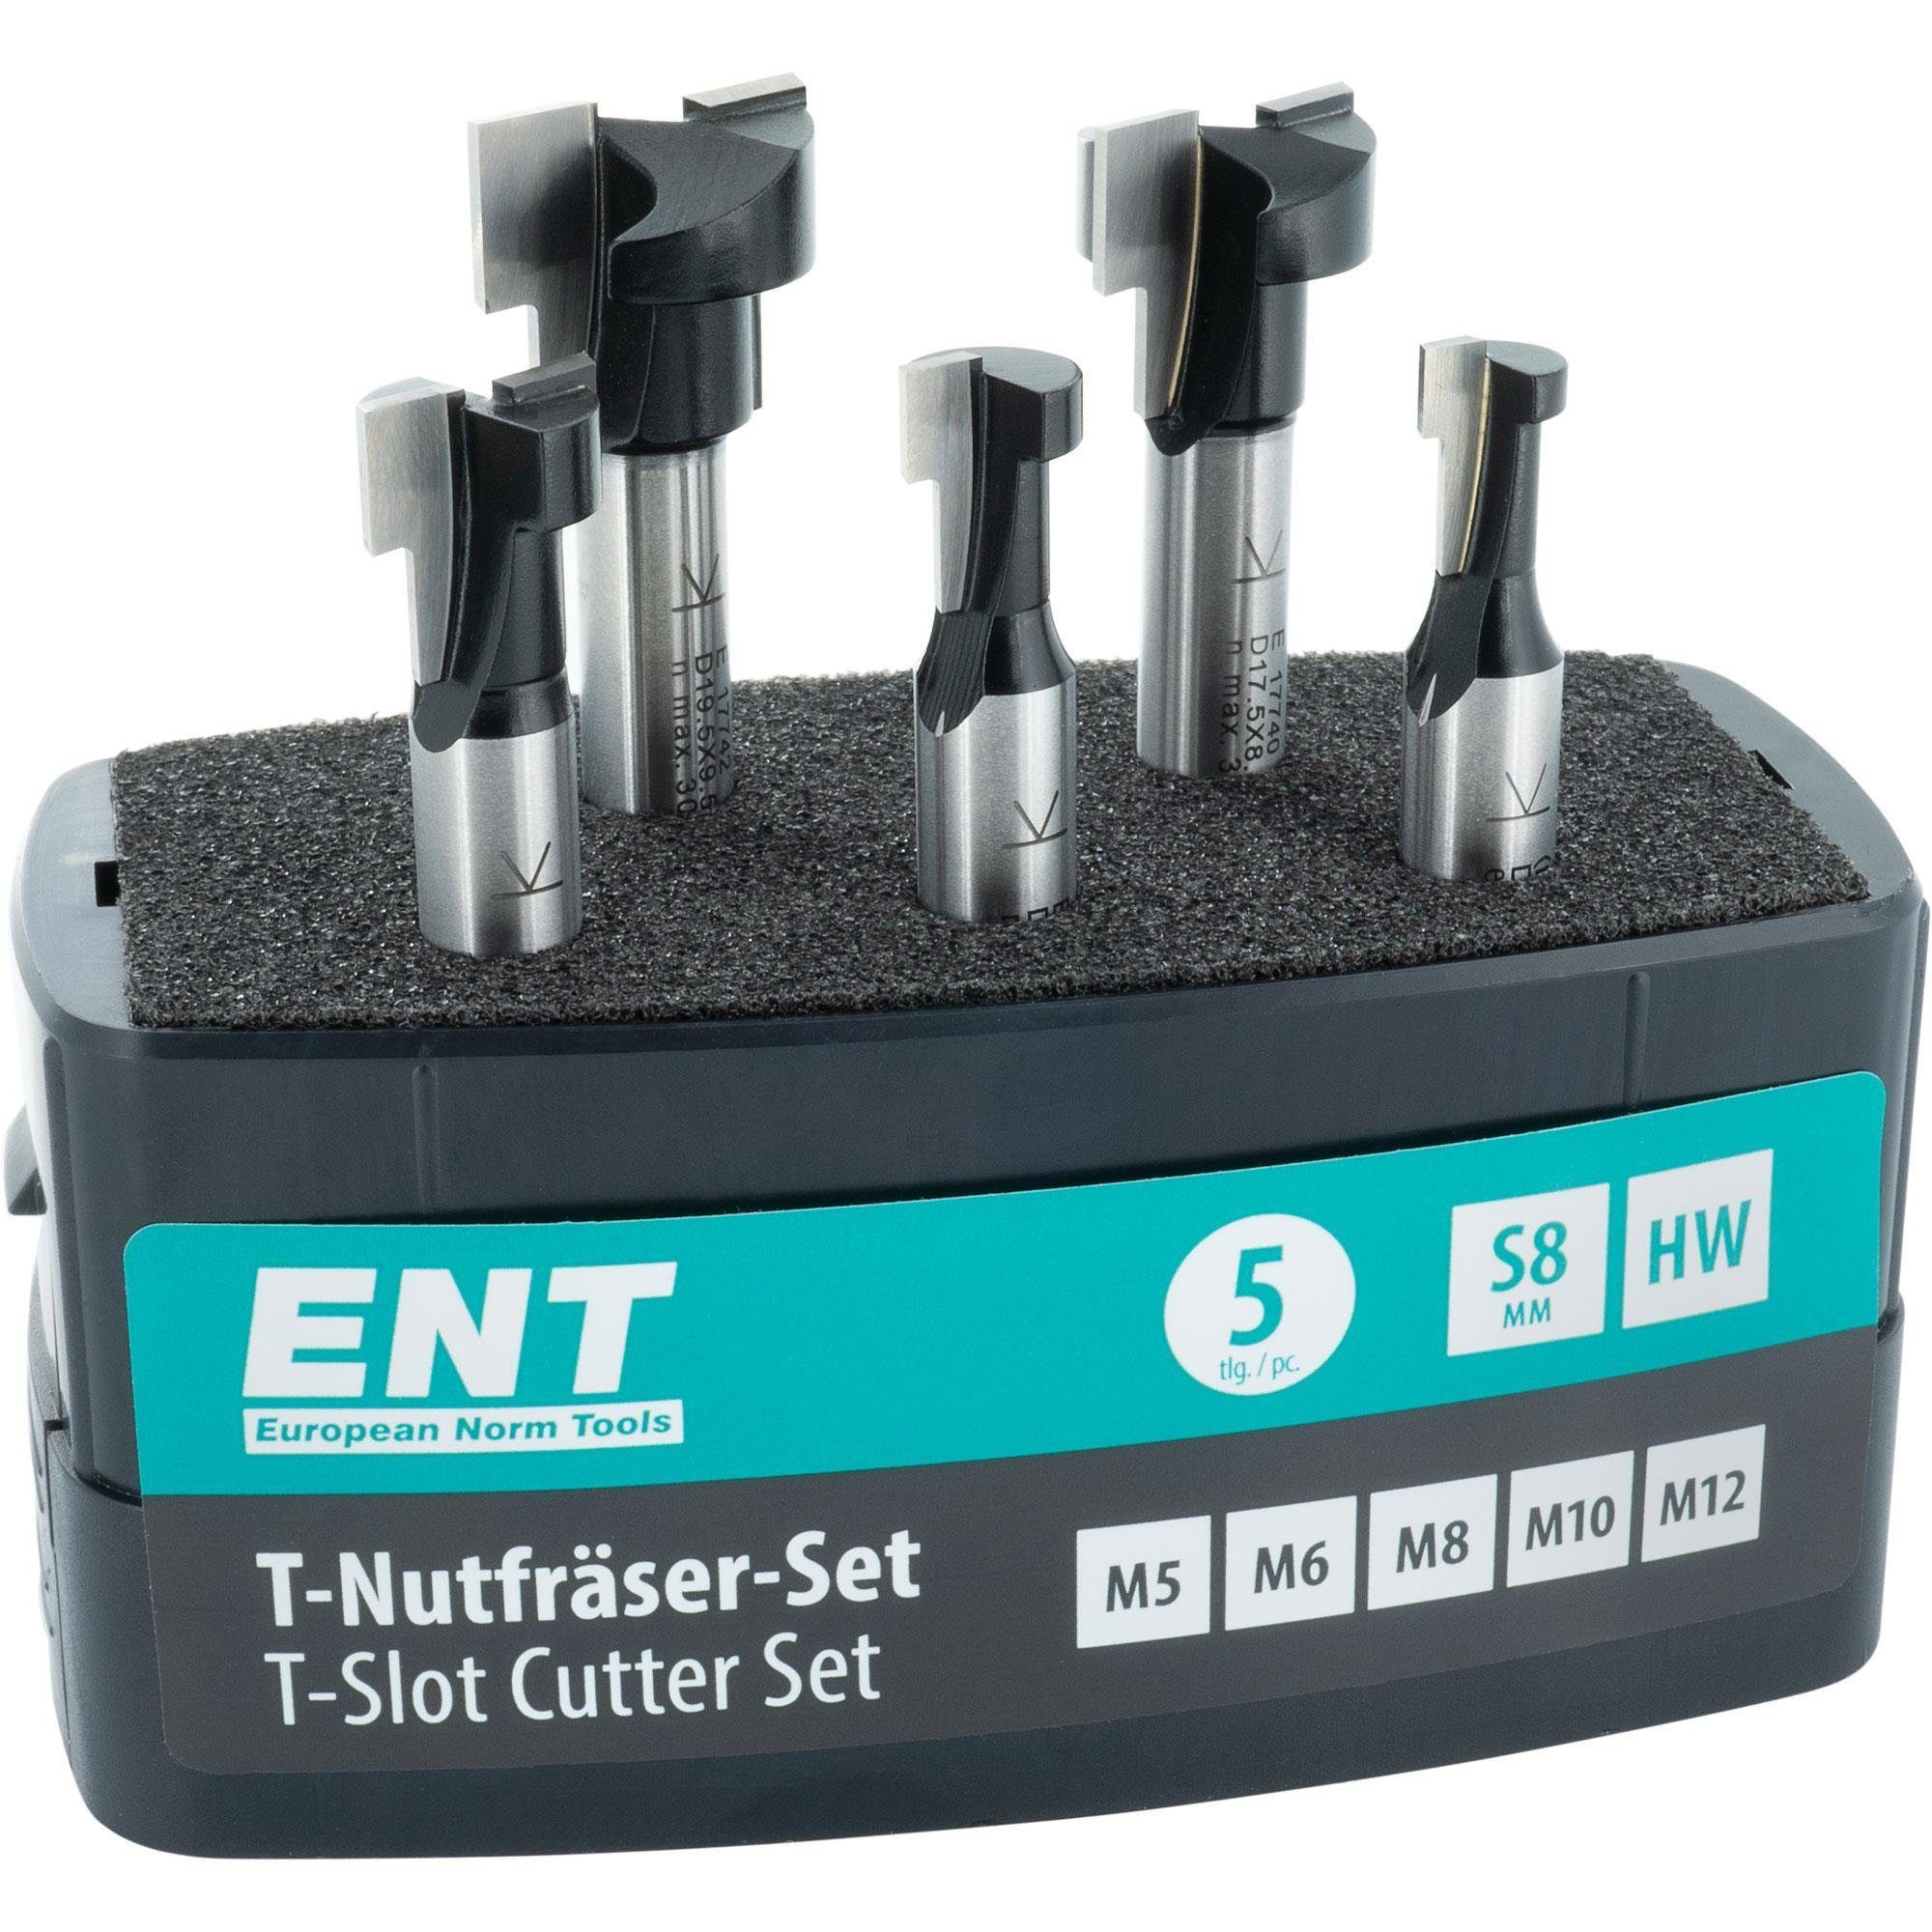 ENT European Norm Tools T-Nutfräser 09055 5-tlg. T-Nutfräser-Set, Hartmetall